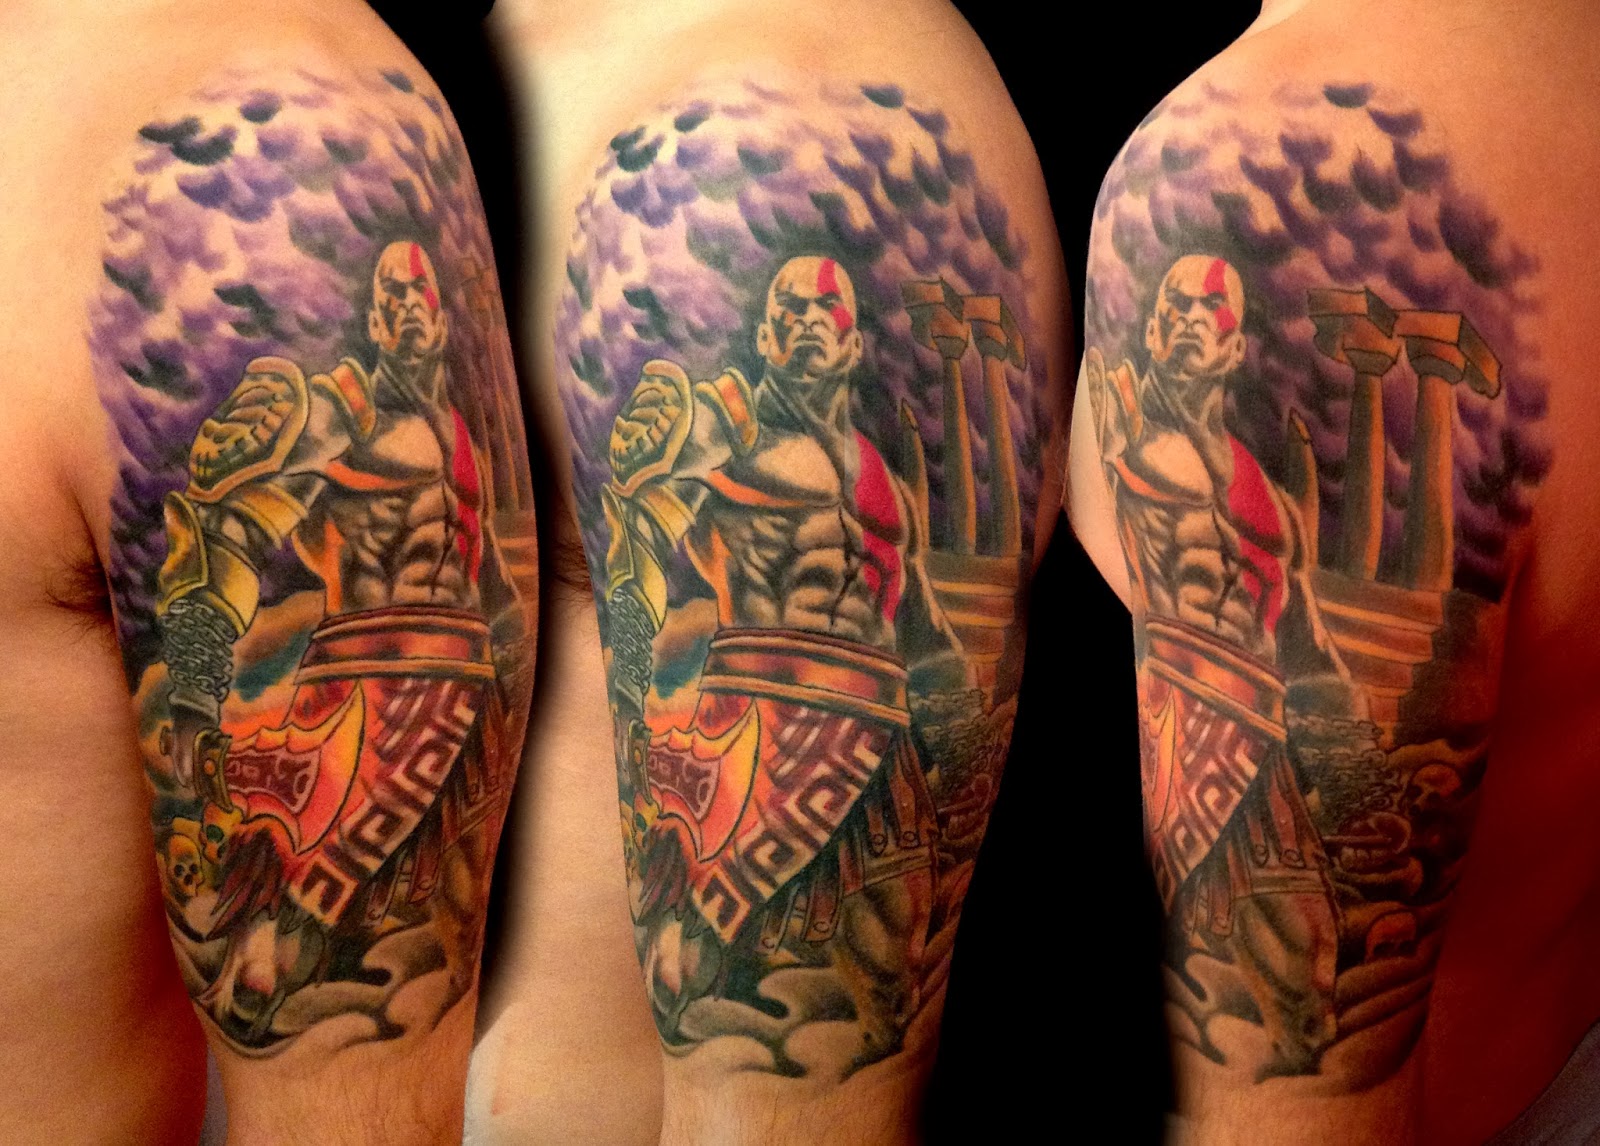 2. God of War arm tattoo - wide 5